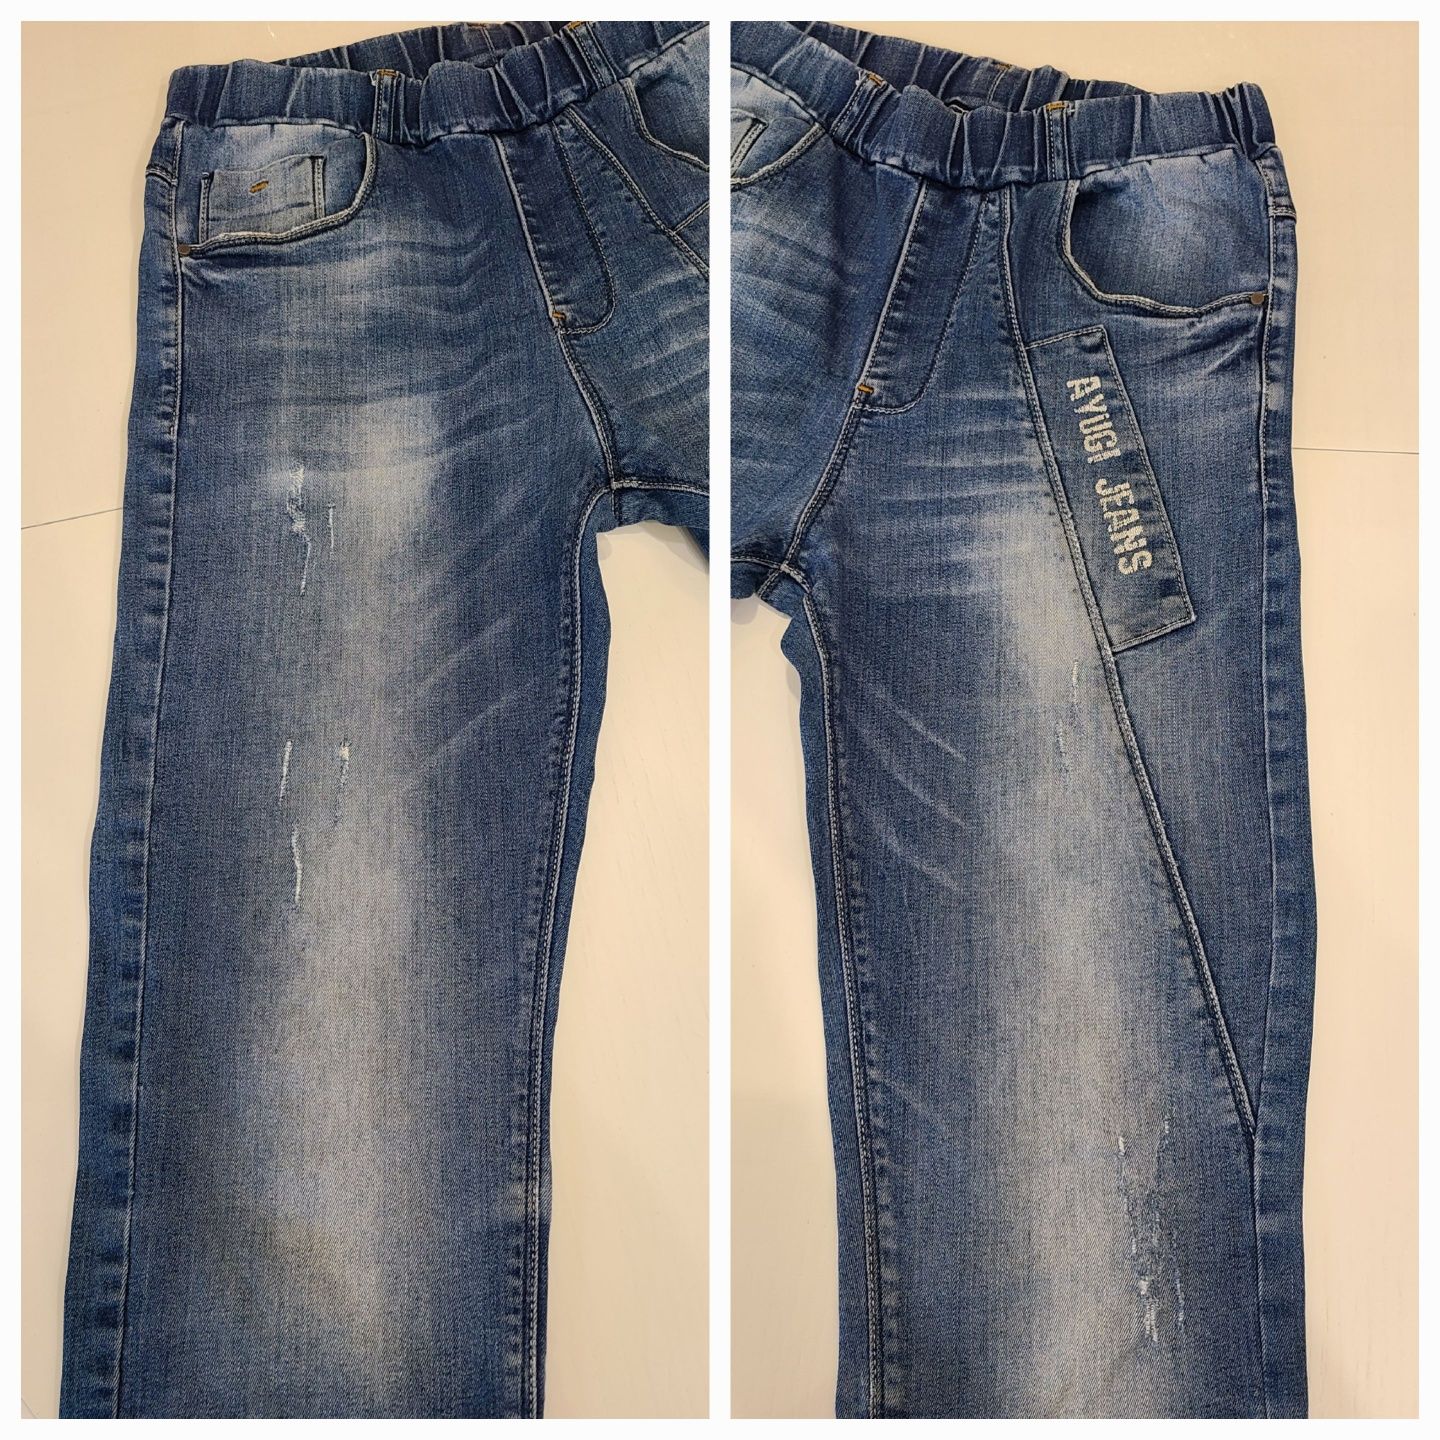 A-yugi джогеры, джинсы на подростка, рост 164, 170